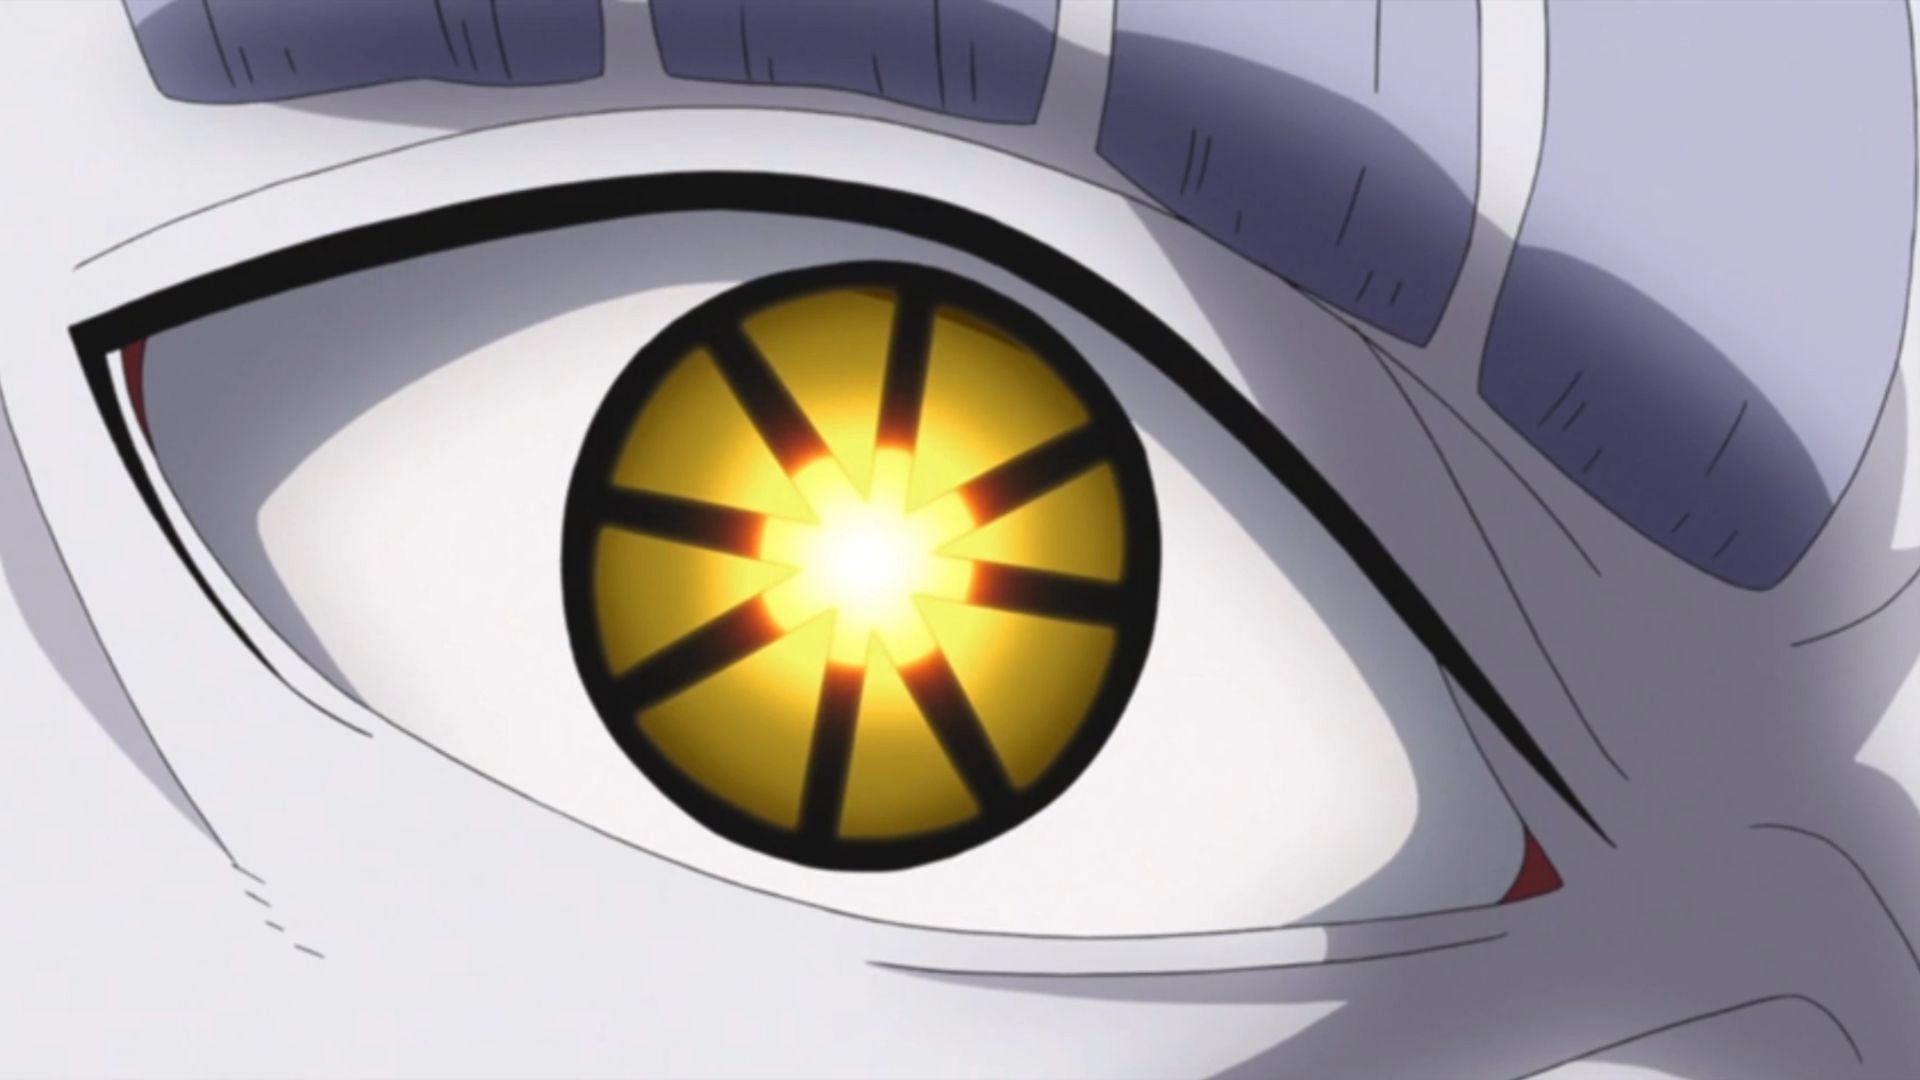 Isshiki Dojutsu, as seen in Naruto (Image via Masashi Kishimoto/Viz Media/Studio Pierrot)